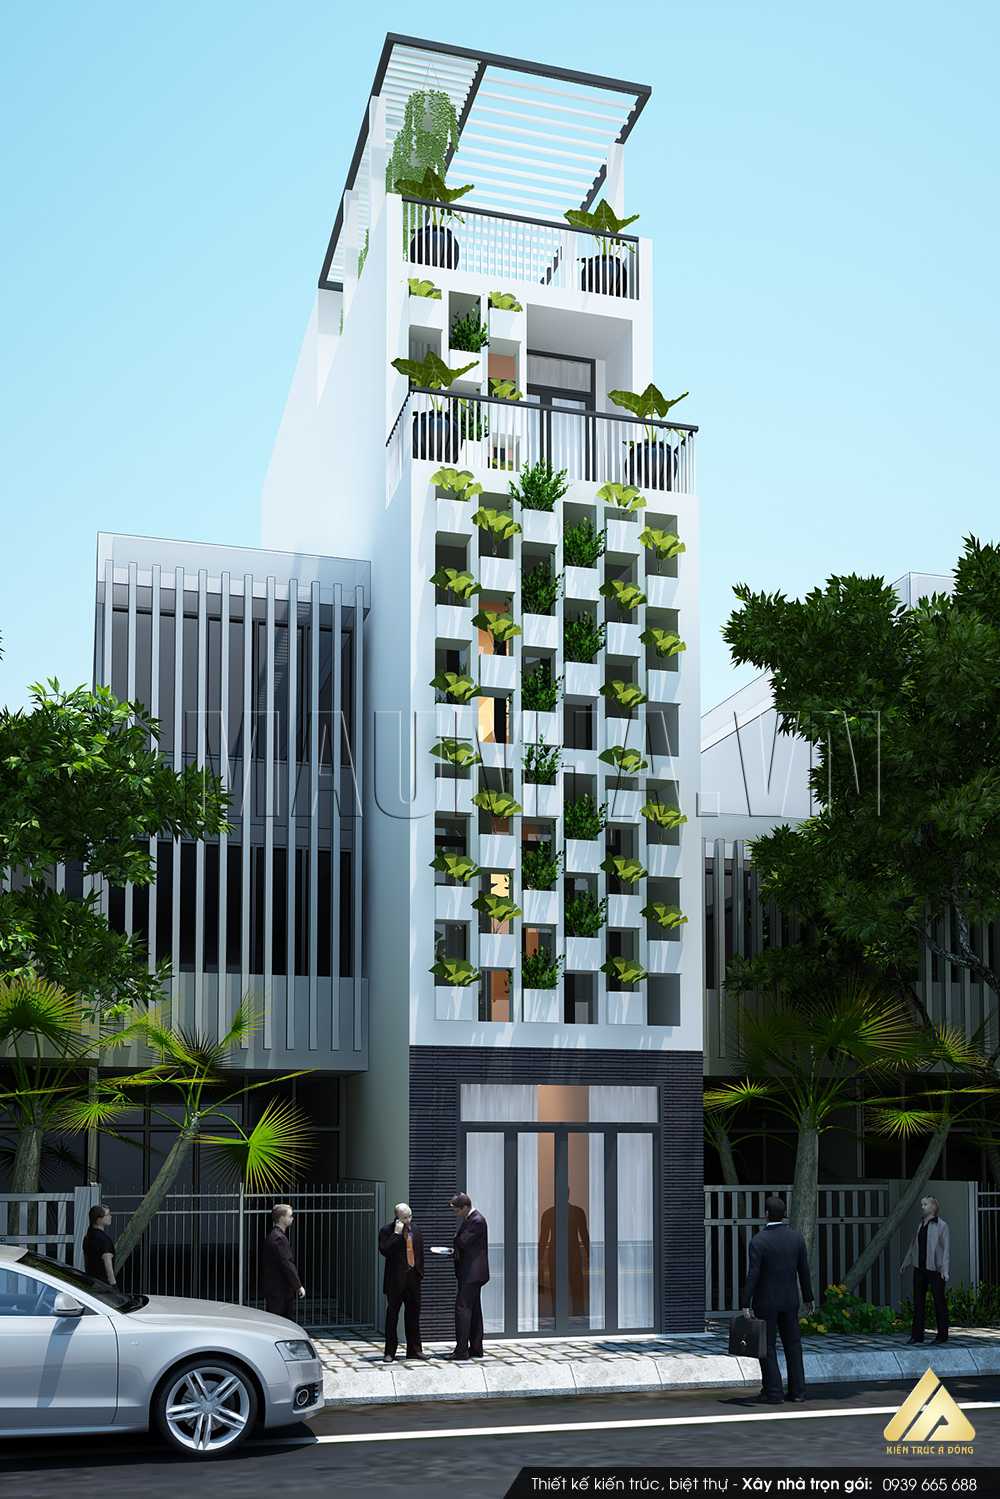 Mê mẩn 1000 mẫu nhà phố đẹp không thể bỏ qua > Mẫu nhà phố 5 tầng phong cách hiện đại tại Hồ Chí Minh